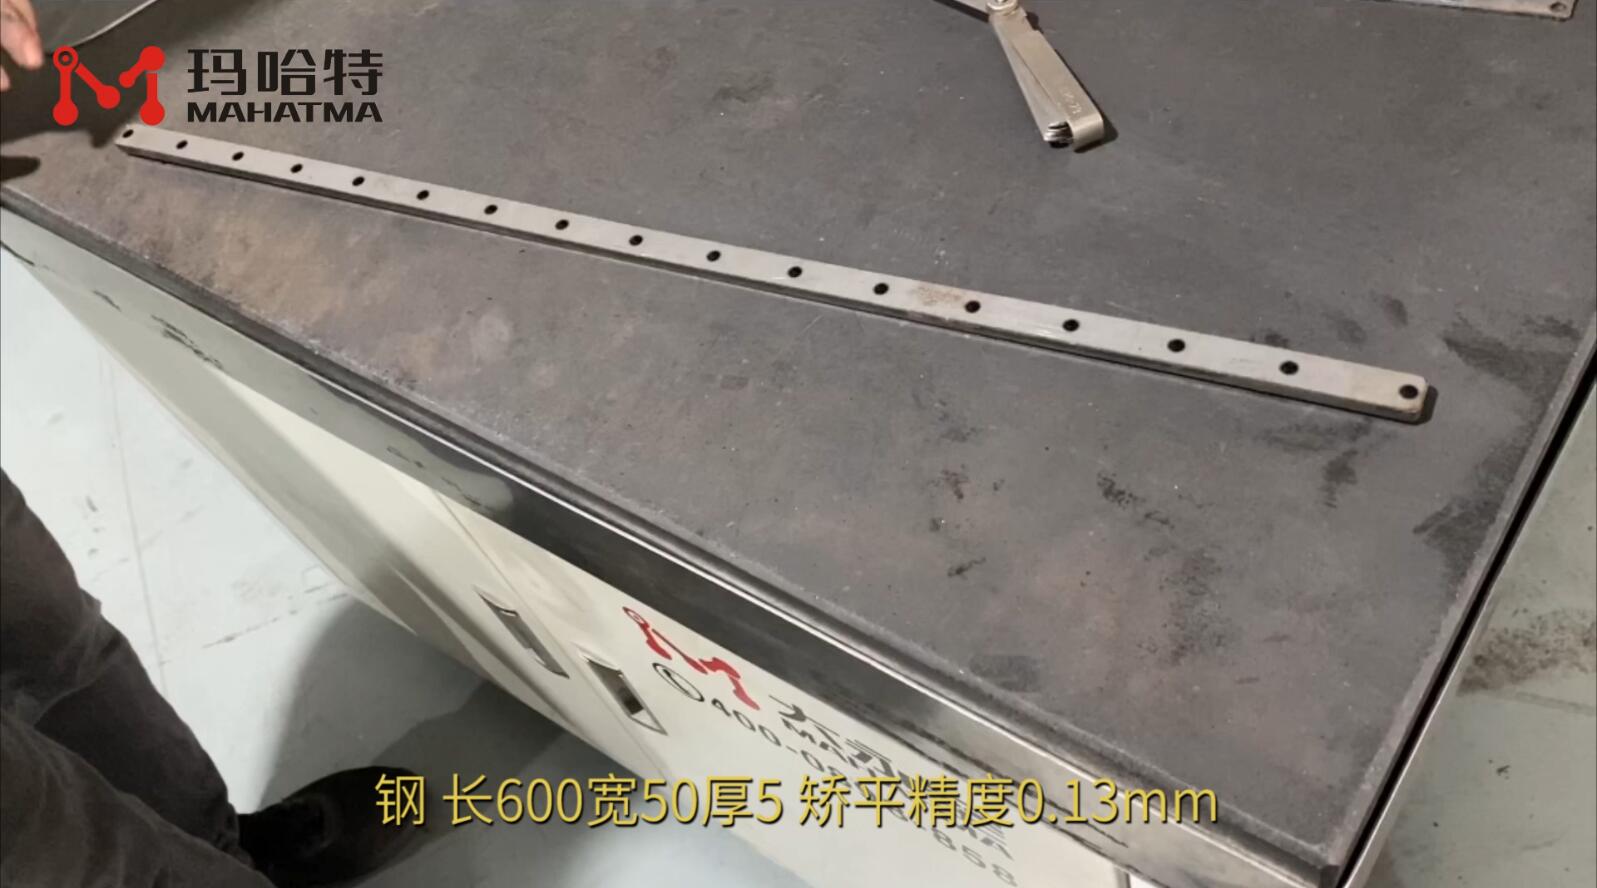 钢 MHT50-1300 长方形 长600宽50厚5 矫平精度0.13mm